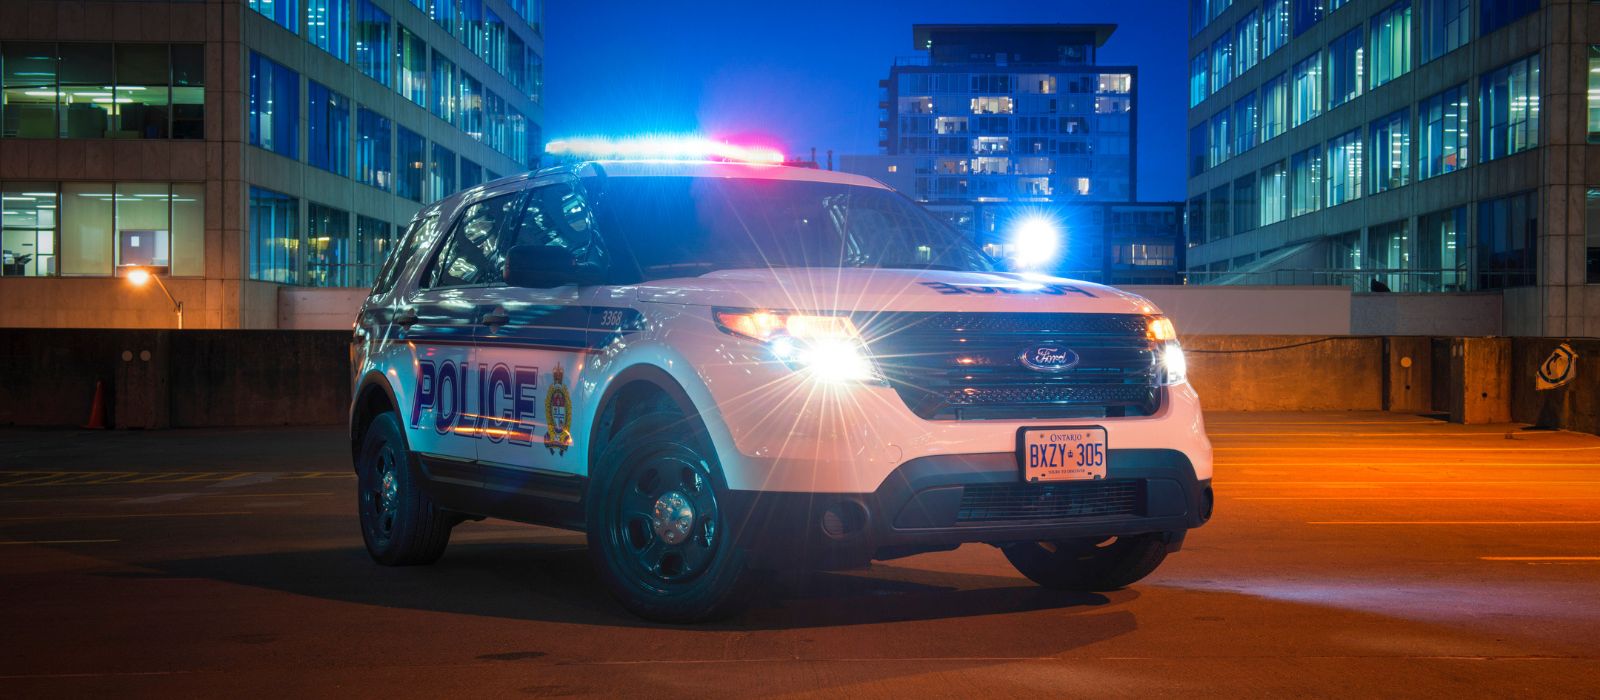 Une voiture de police avec des lumières allumées la nuit.